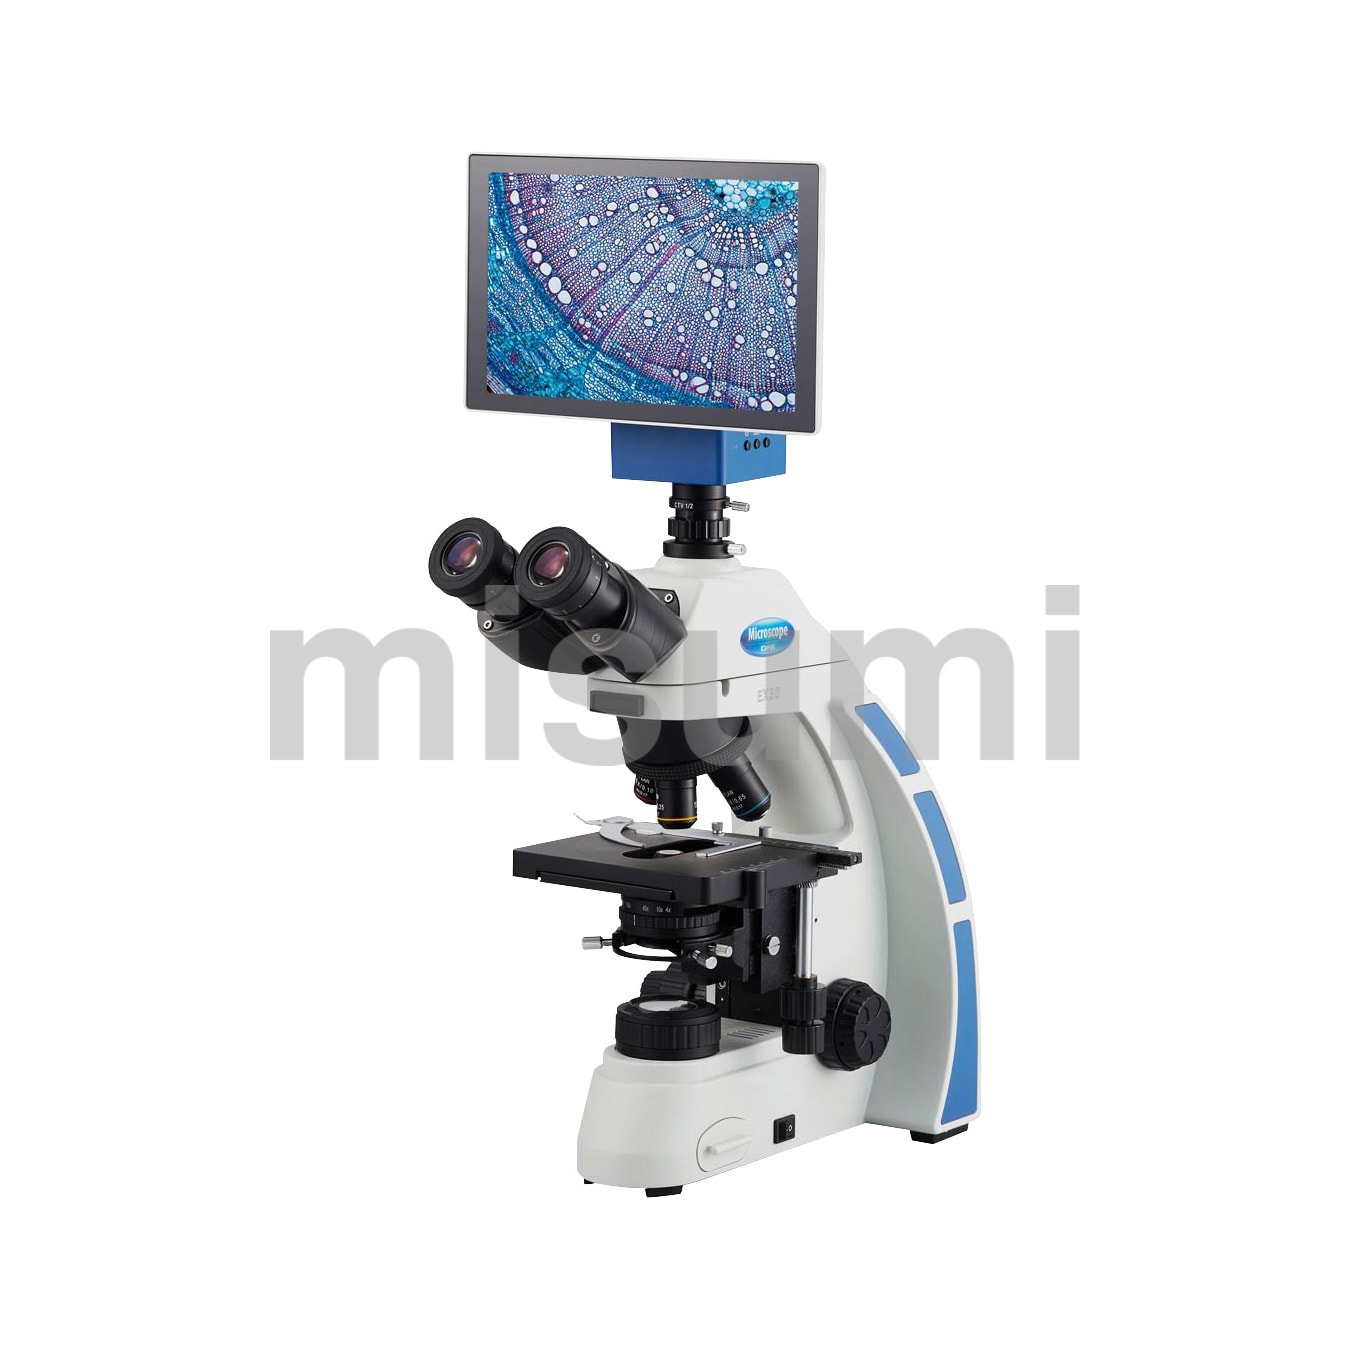 タブレット型生物顕微鏡 ケニス MISUMI(ミスミ)